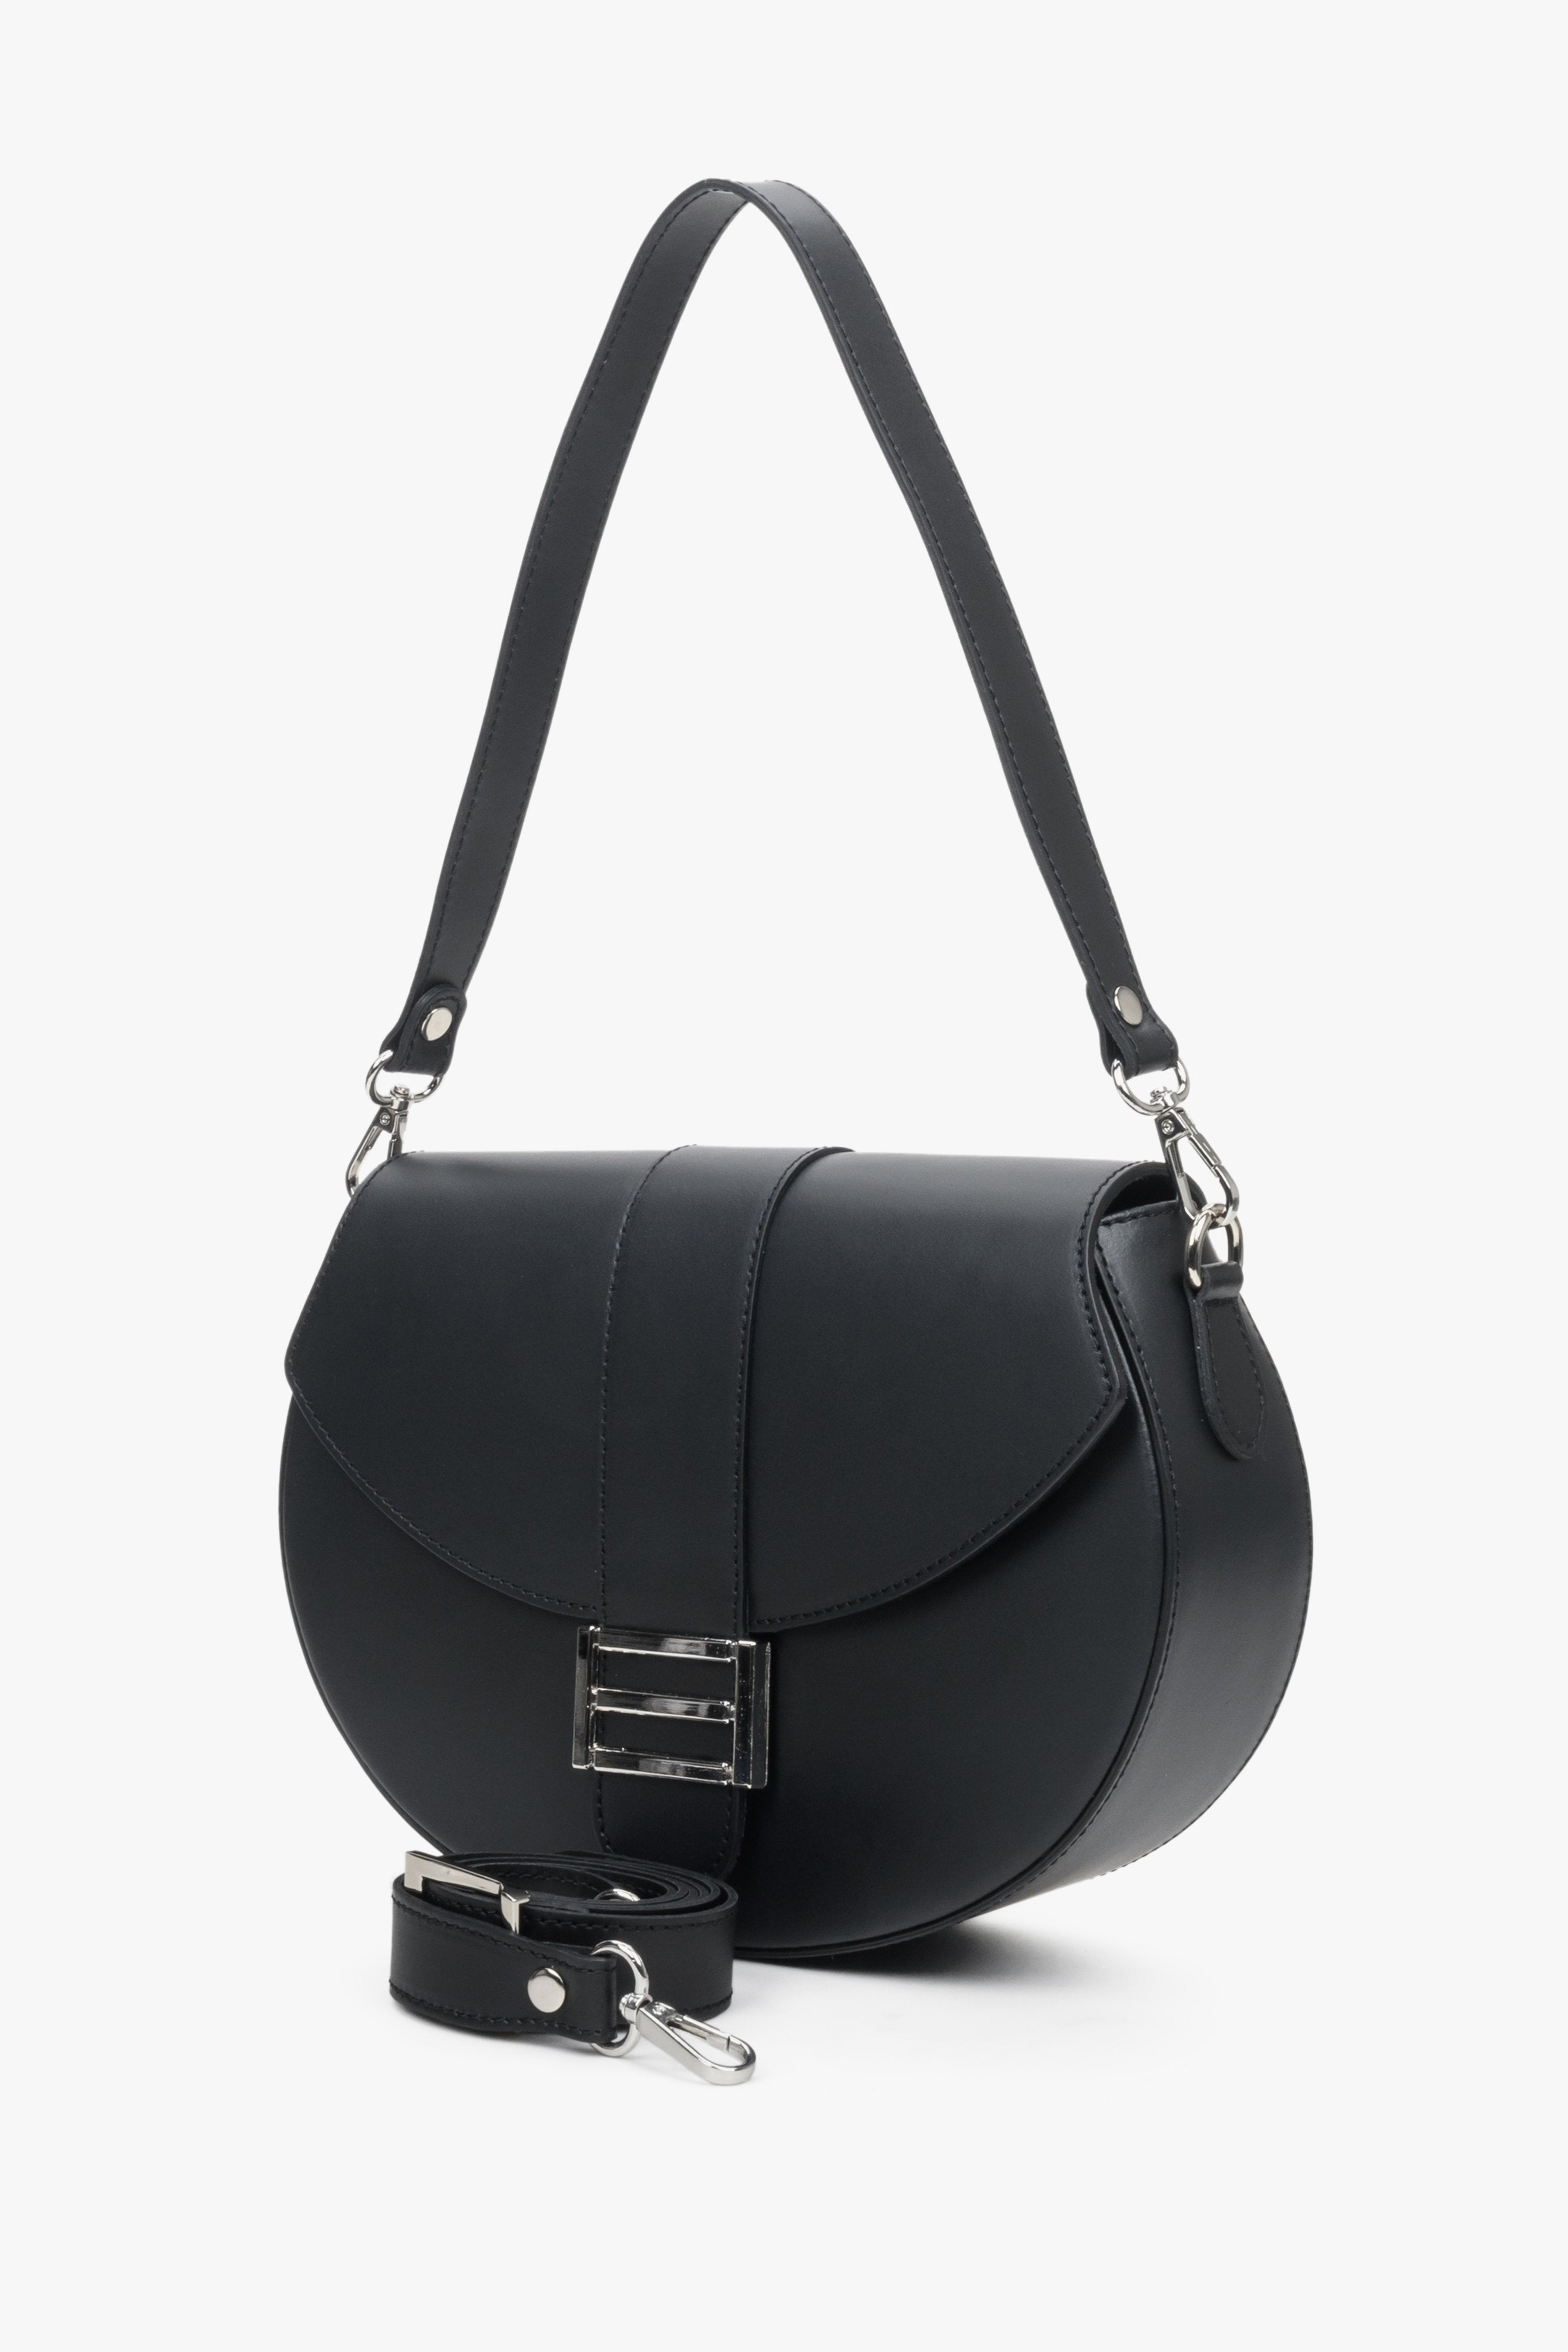 Skórzana torba damska w kolorze czarnym z dwoma regulowanymi paskami Estro - prezentacja modelu z krótką rączką.